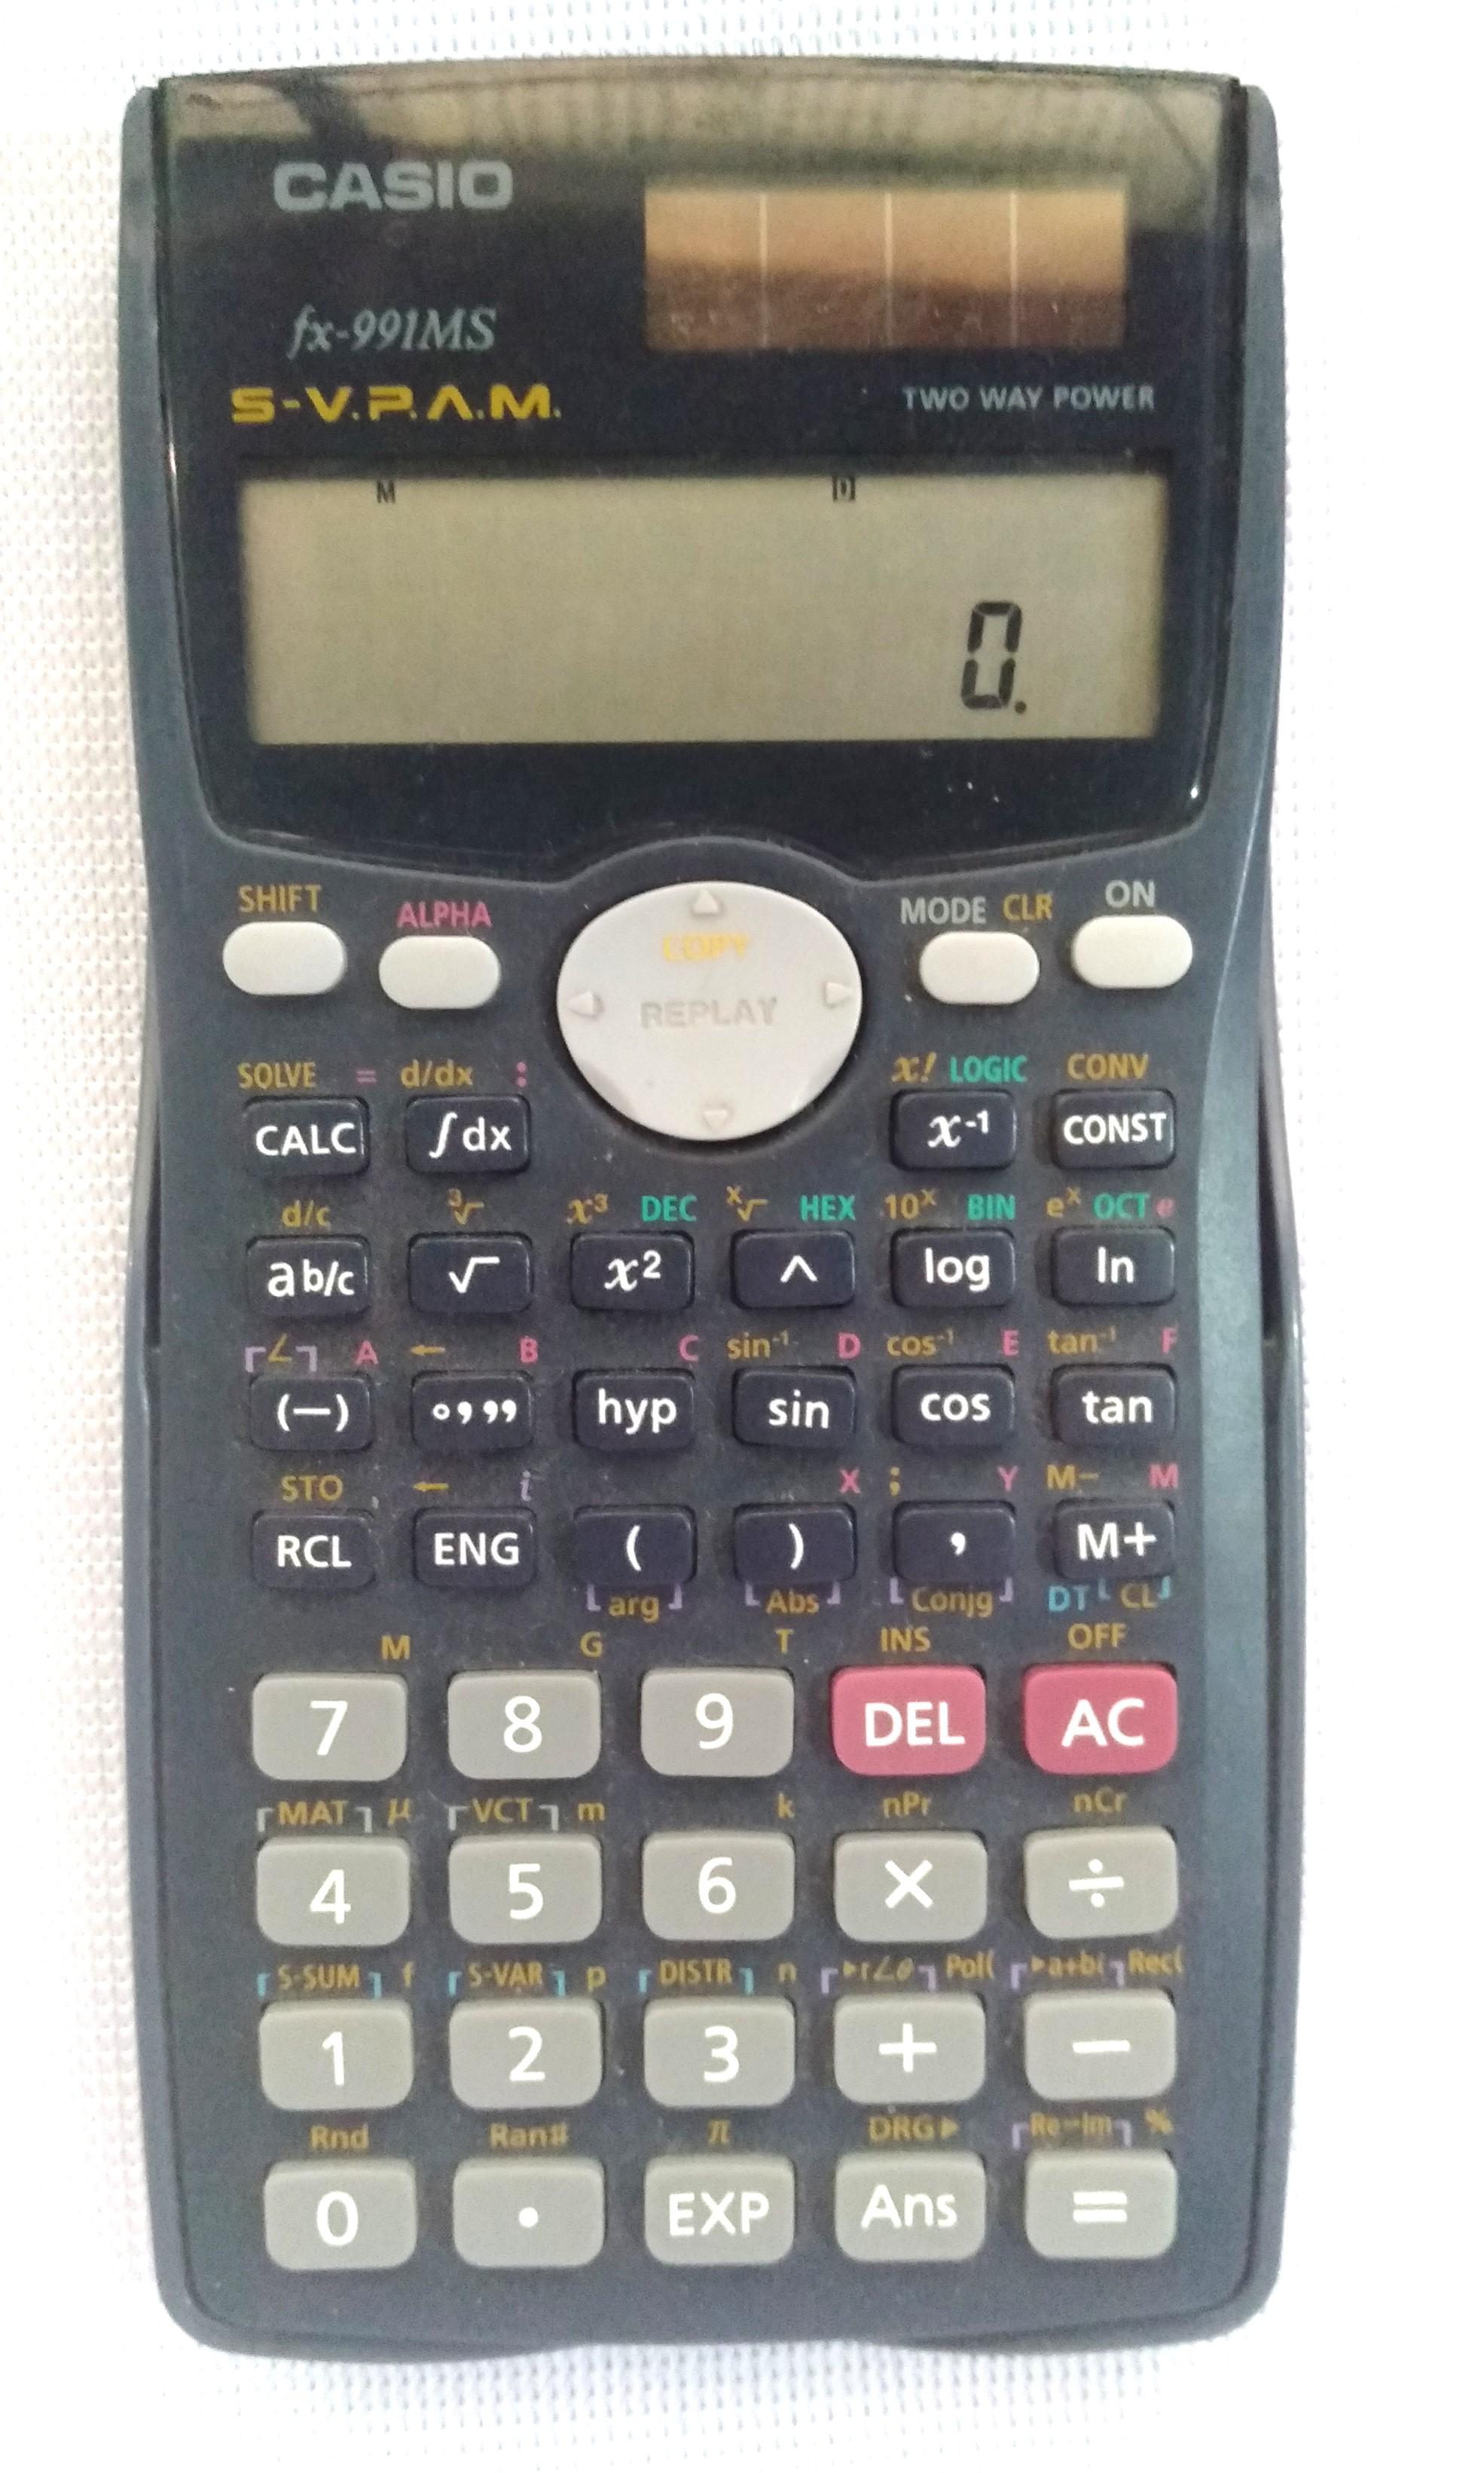 Casio Scientific calculator: Nếu bạn đang tìm kiếm một chiếc máy tính khoa học để giúp bạn giải quyết những bài toán phức tạp, Casio Scientific là lựa chọn hoàn hảo cho bạn! Với thiết kế đơn giản và tính năng tính toán chính xác, máy tính này sẽ giúp bạn tiết kiệm nhiều thời gian và nỗ lực. Hãy xem hình ảnh để tìm hiểu thêm!